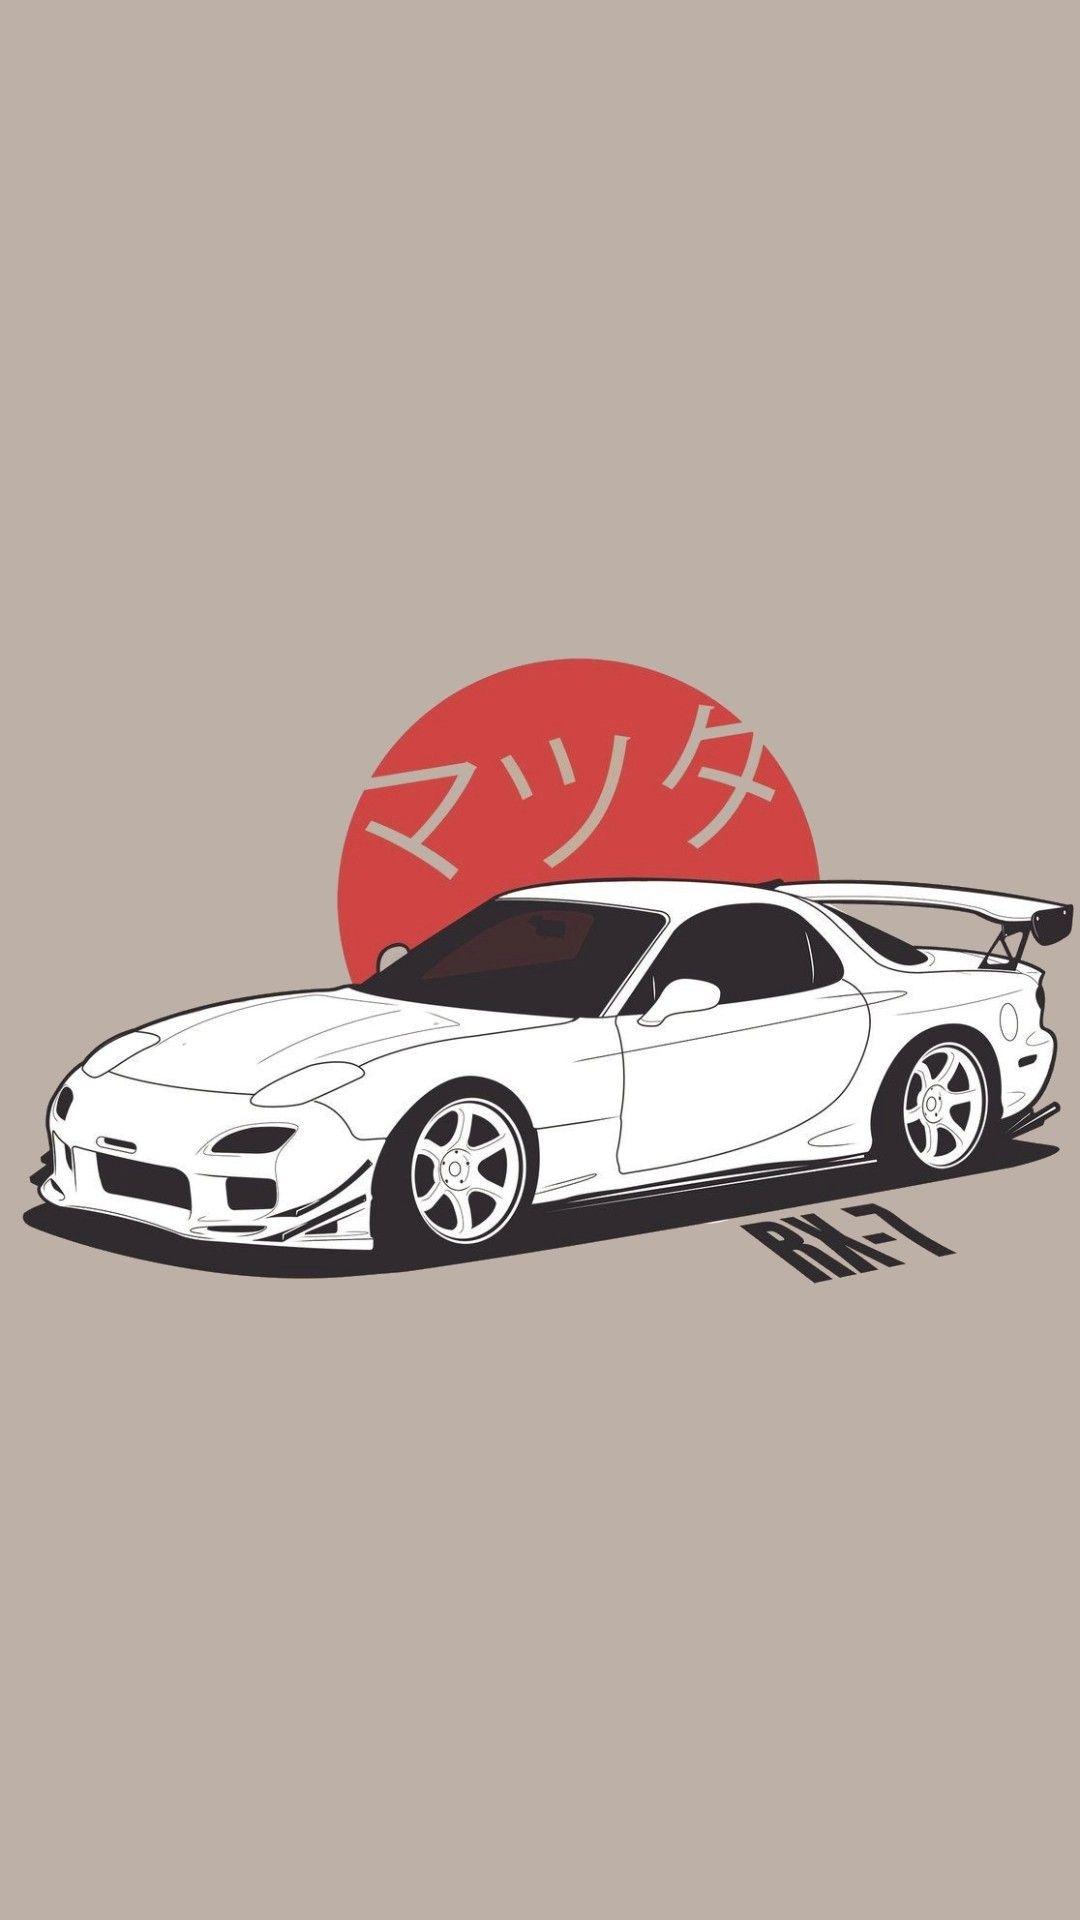 Japanese Sports Cars, Japanese Cars, Toyota Supra